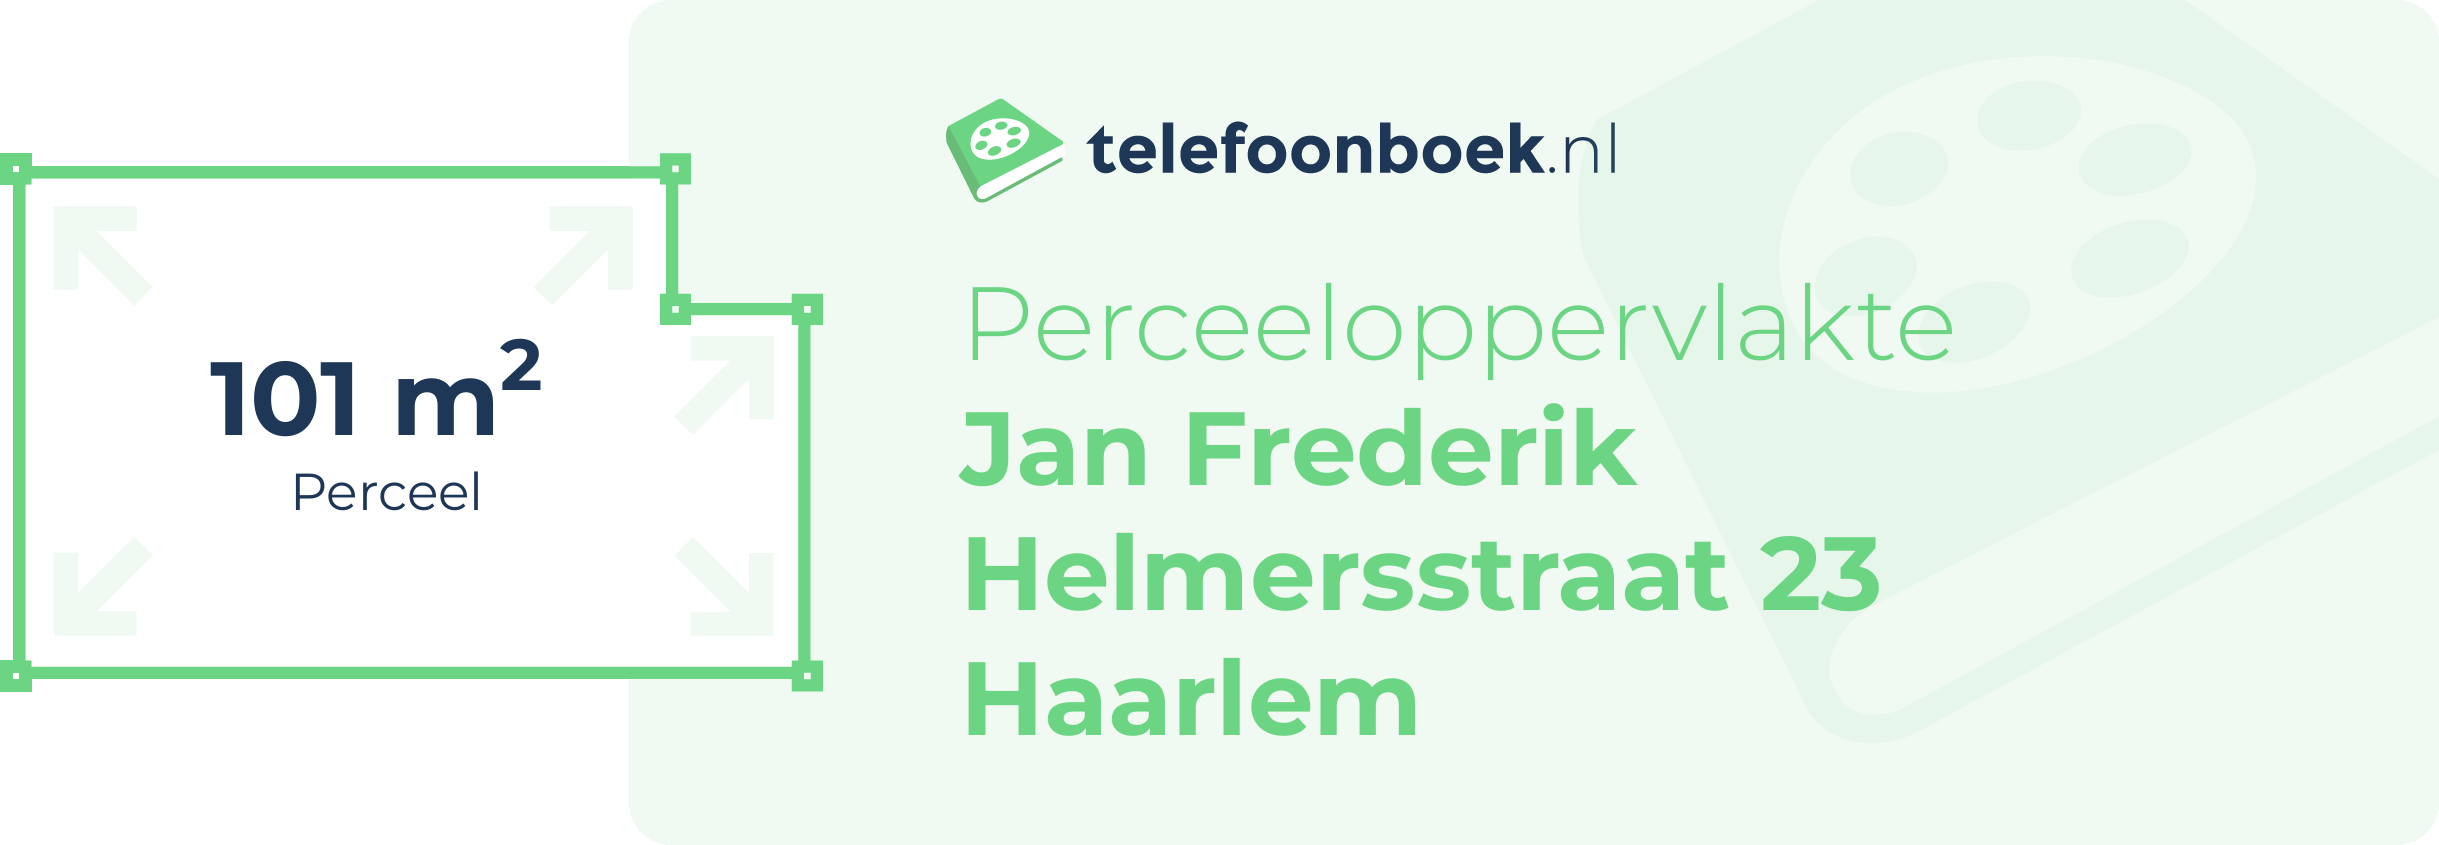 Perceeloppervlakte Jan Frederik Helmersstraat 23 Haarlem